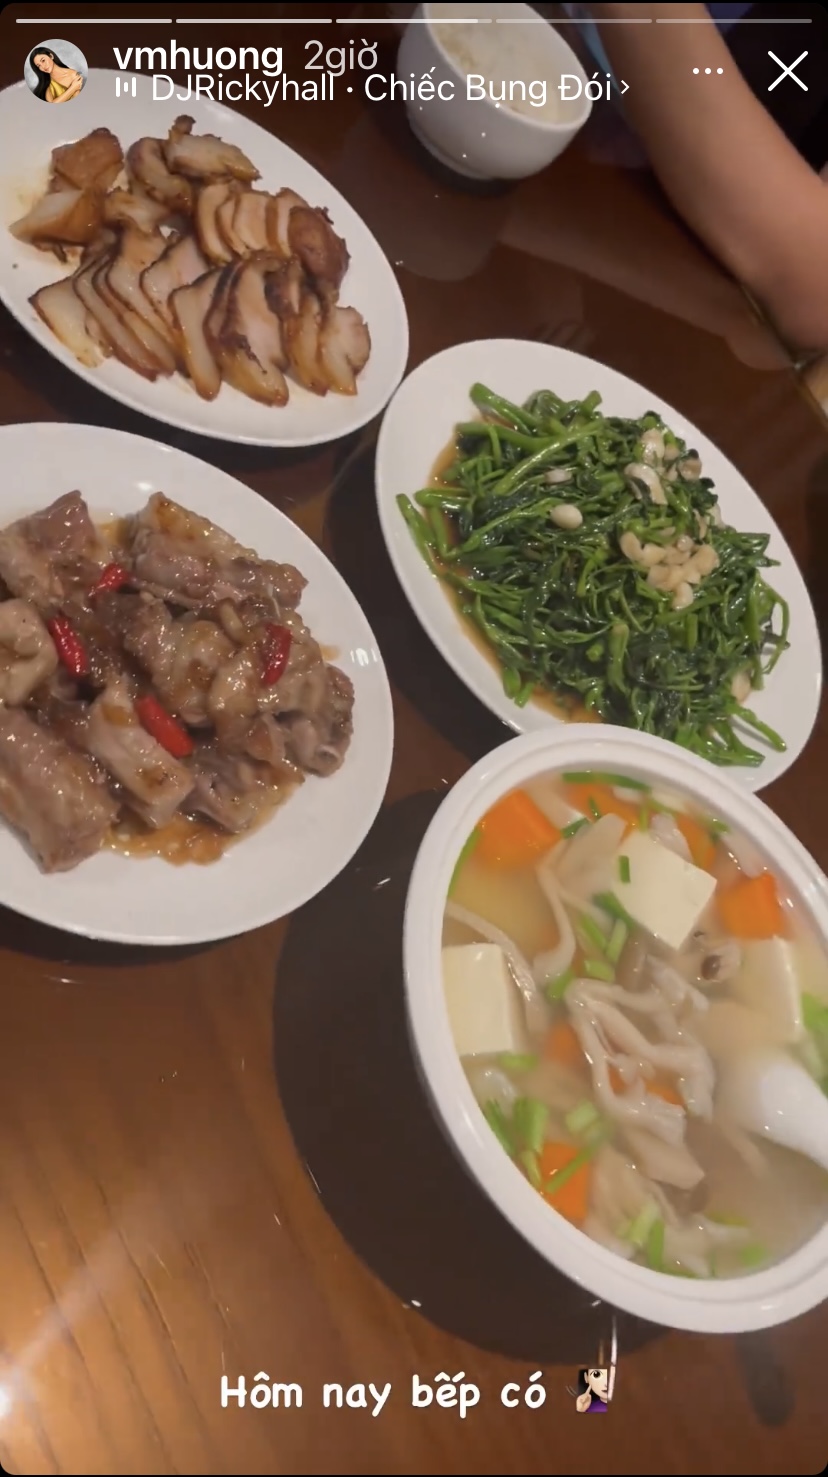 Bàn ăn nhà Văn Mai Hương khá đầy đặn với những món ngon như rau xào, sườn chua ngọt, thịt xá xíu, canh nấm đậu non...